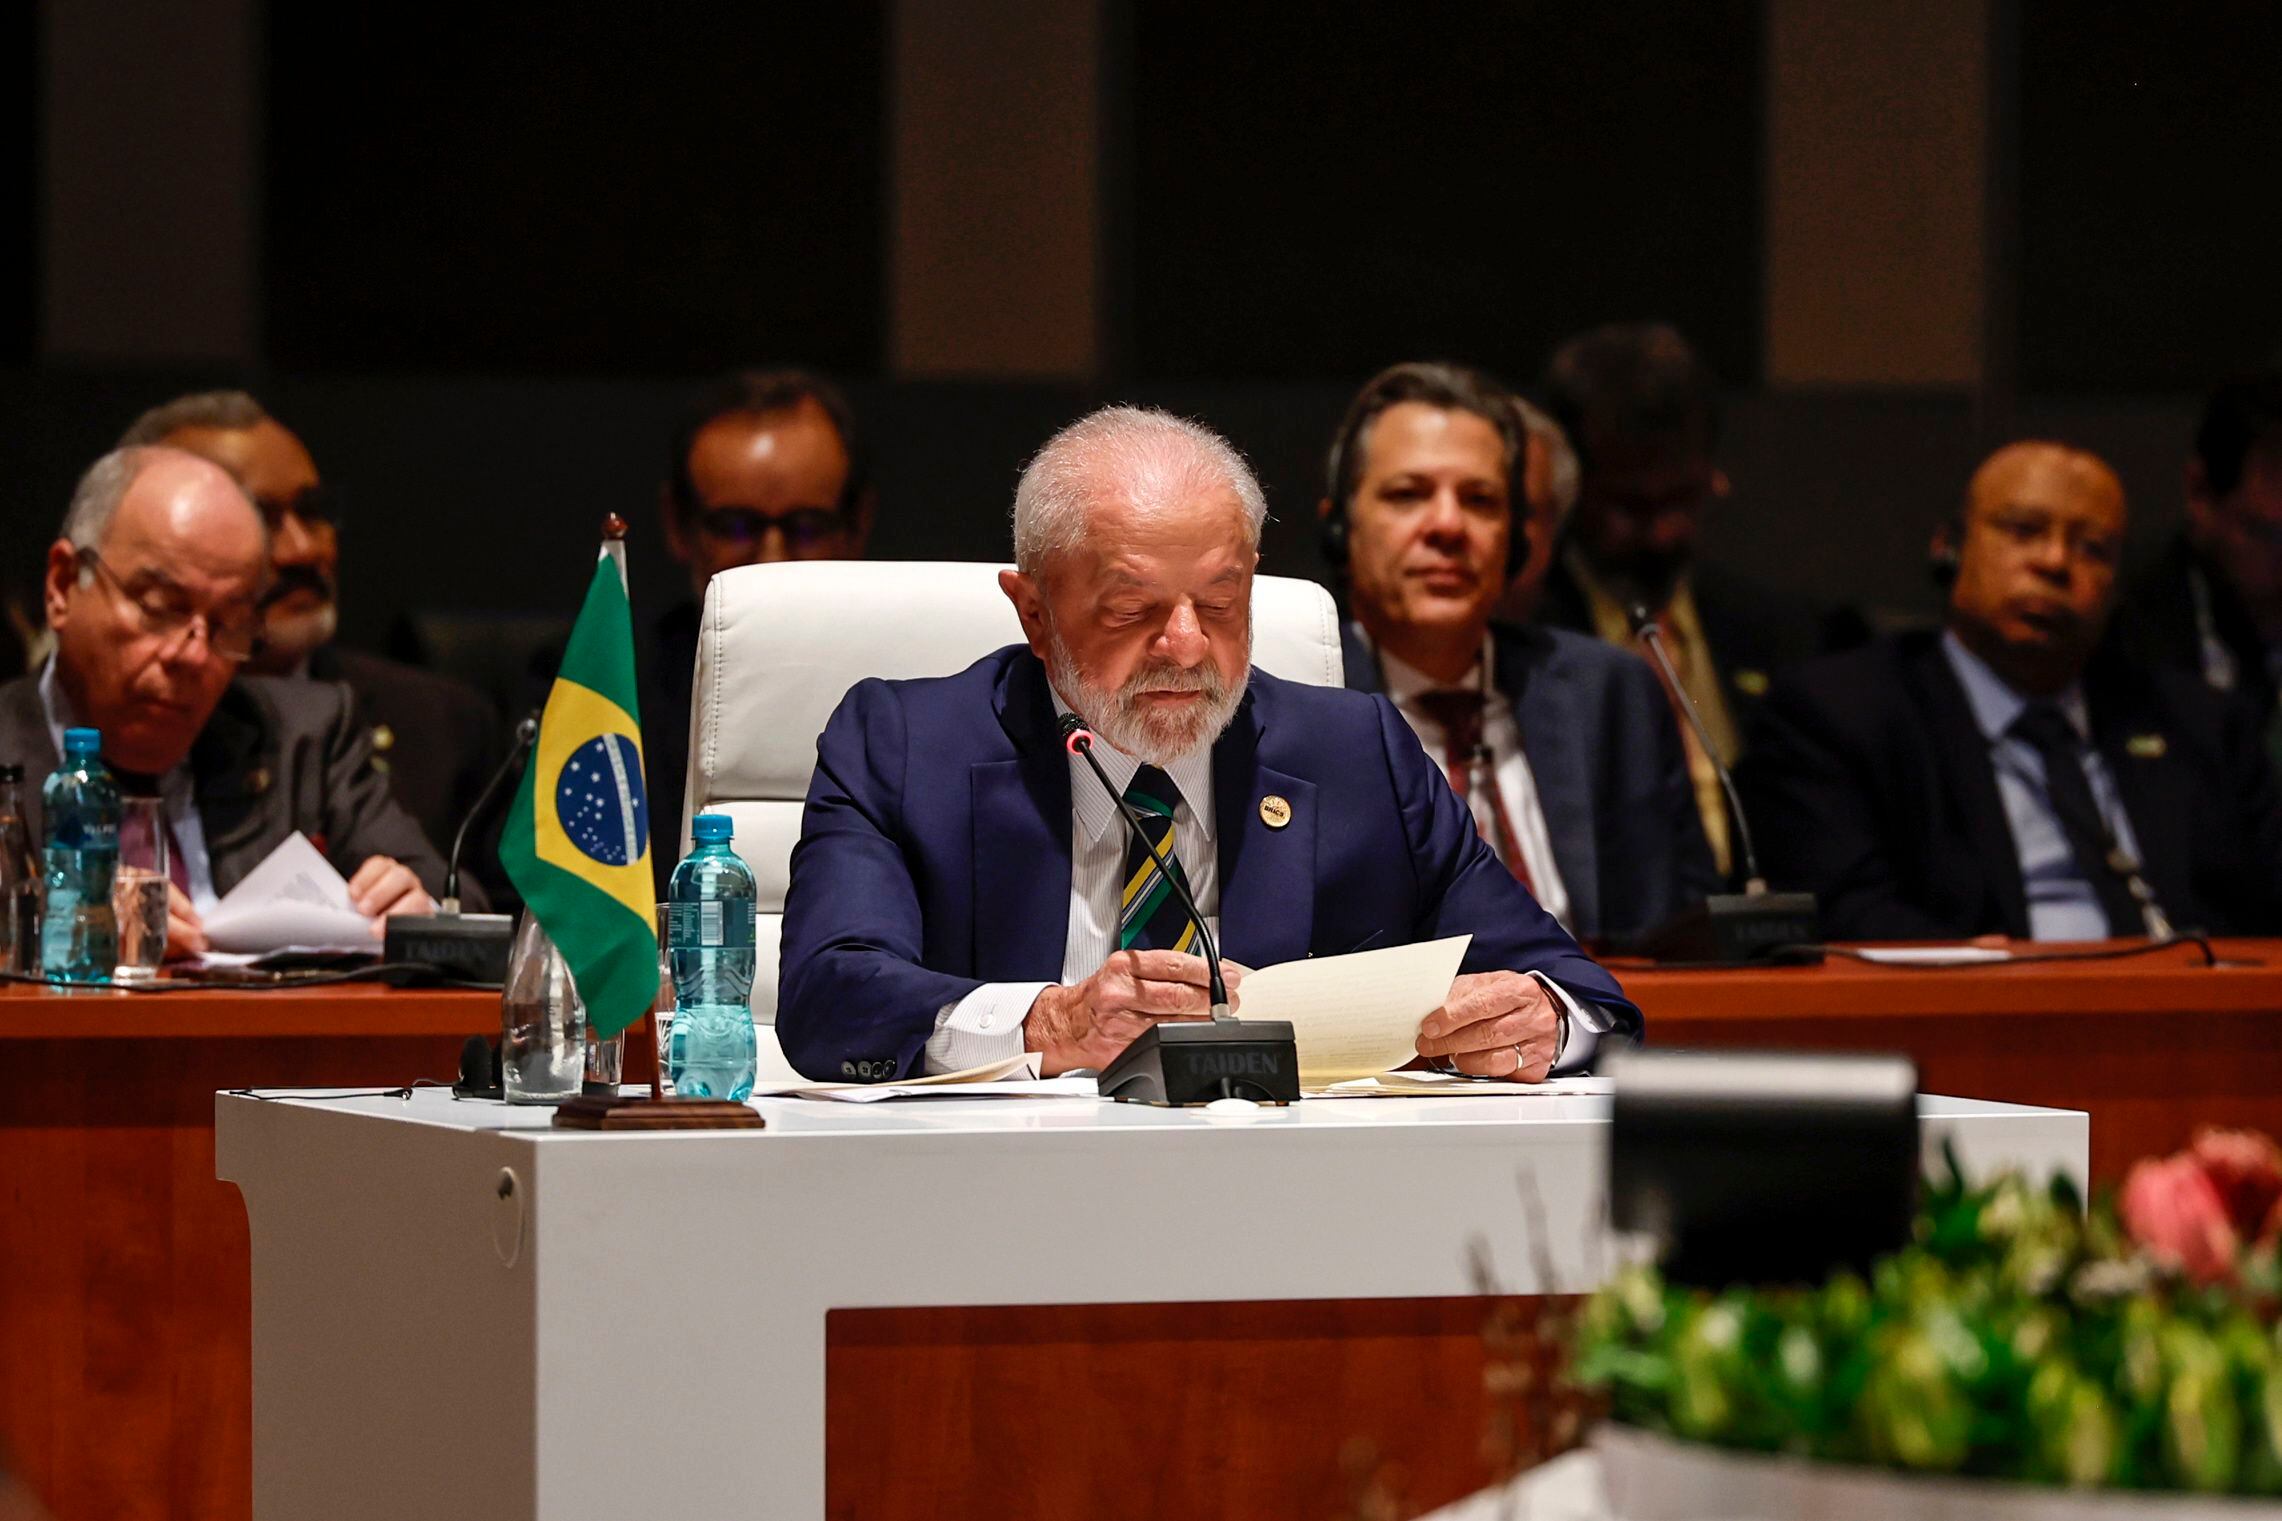 El presidente brasileño Lula da Silva en un momento de la cumbre (EFE/EPA/GIANLUIGI GUERCIA)
